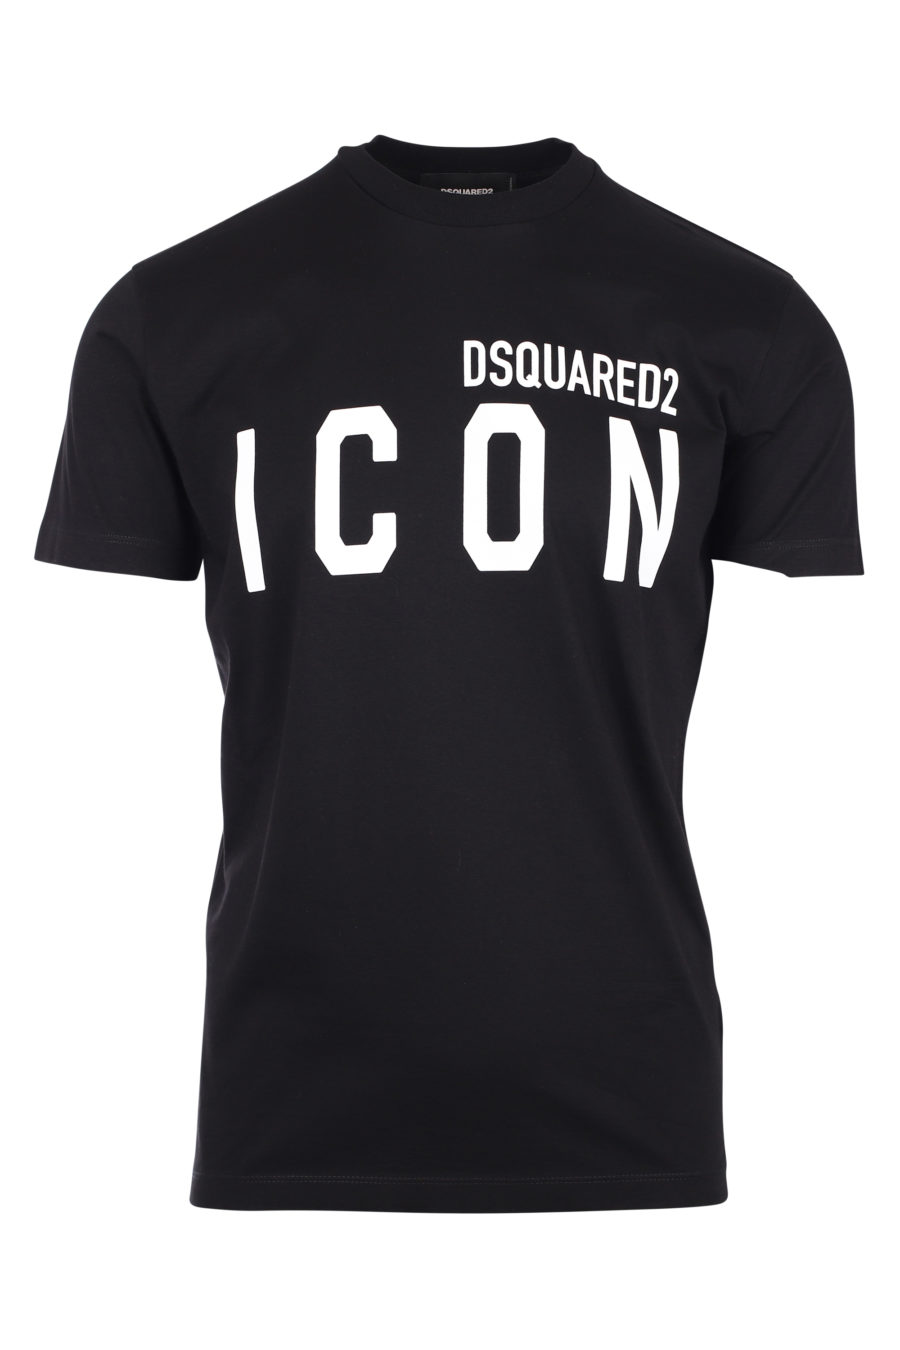 T-shirt preta com o logótipo "icon" - IMG 9787